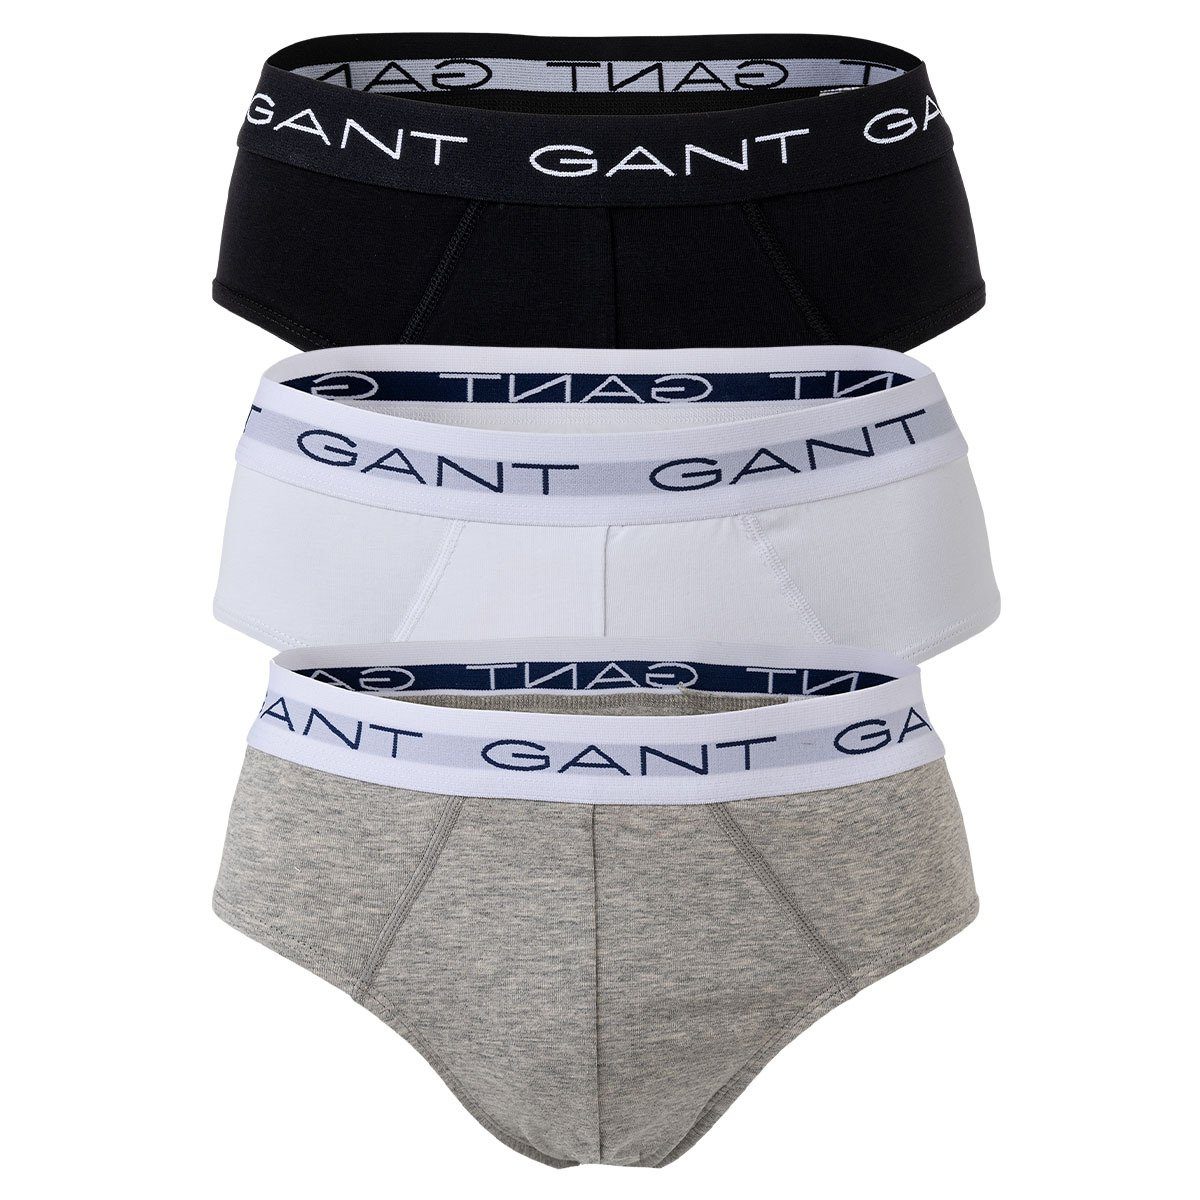 Gant Slip Herren Slips, 3er Pack - Briefs, Cotton Stretch Grau